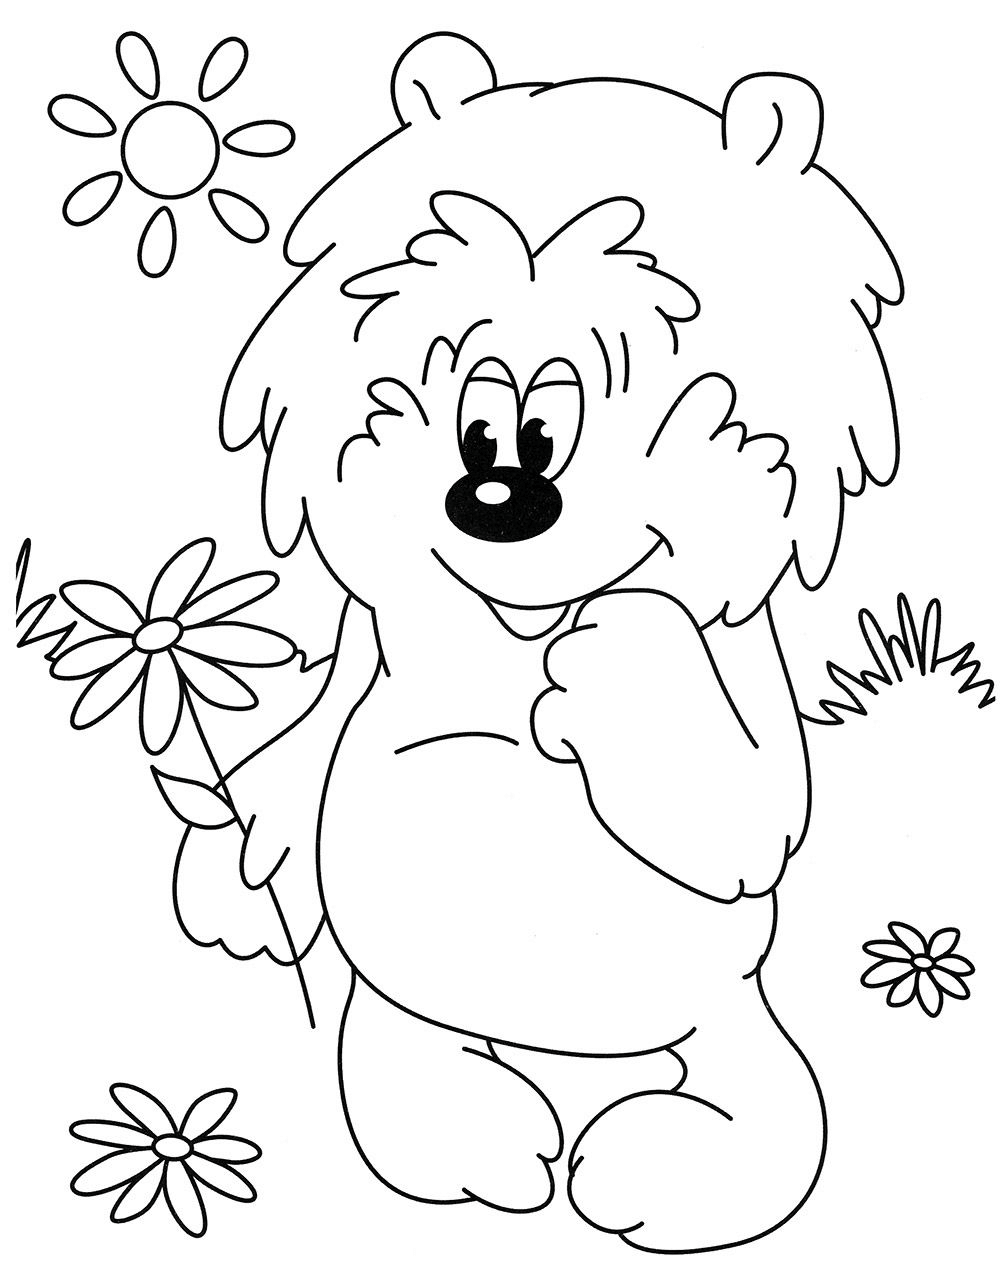 Раскраска Медвежонок и цветочек